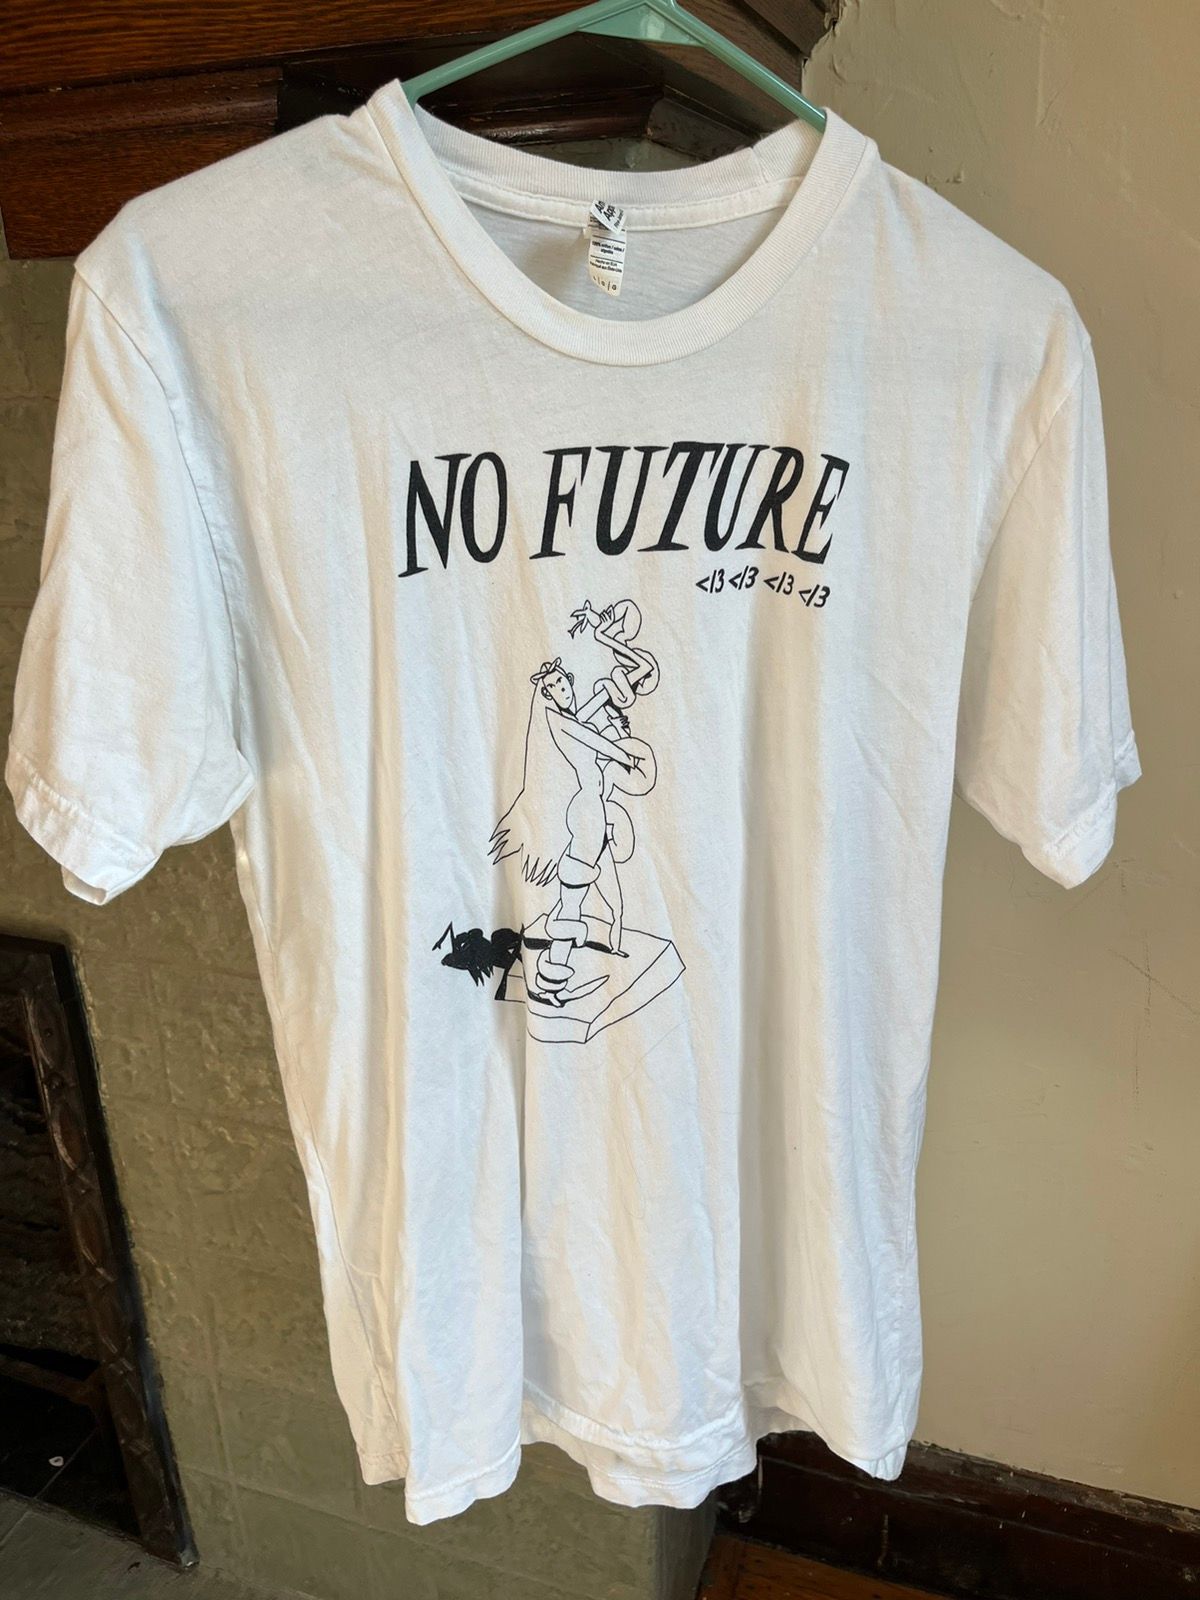 Streetwear Vewn “no future” t | Grailed